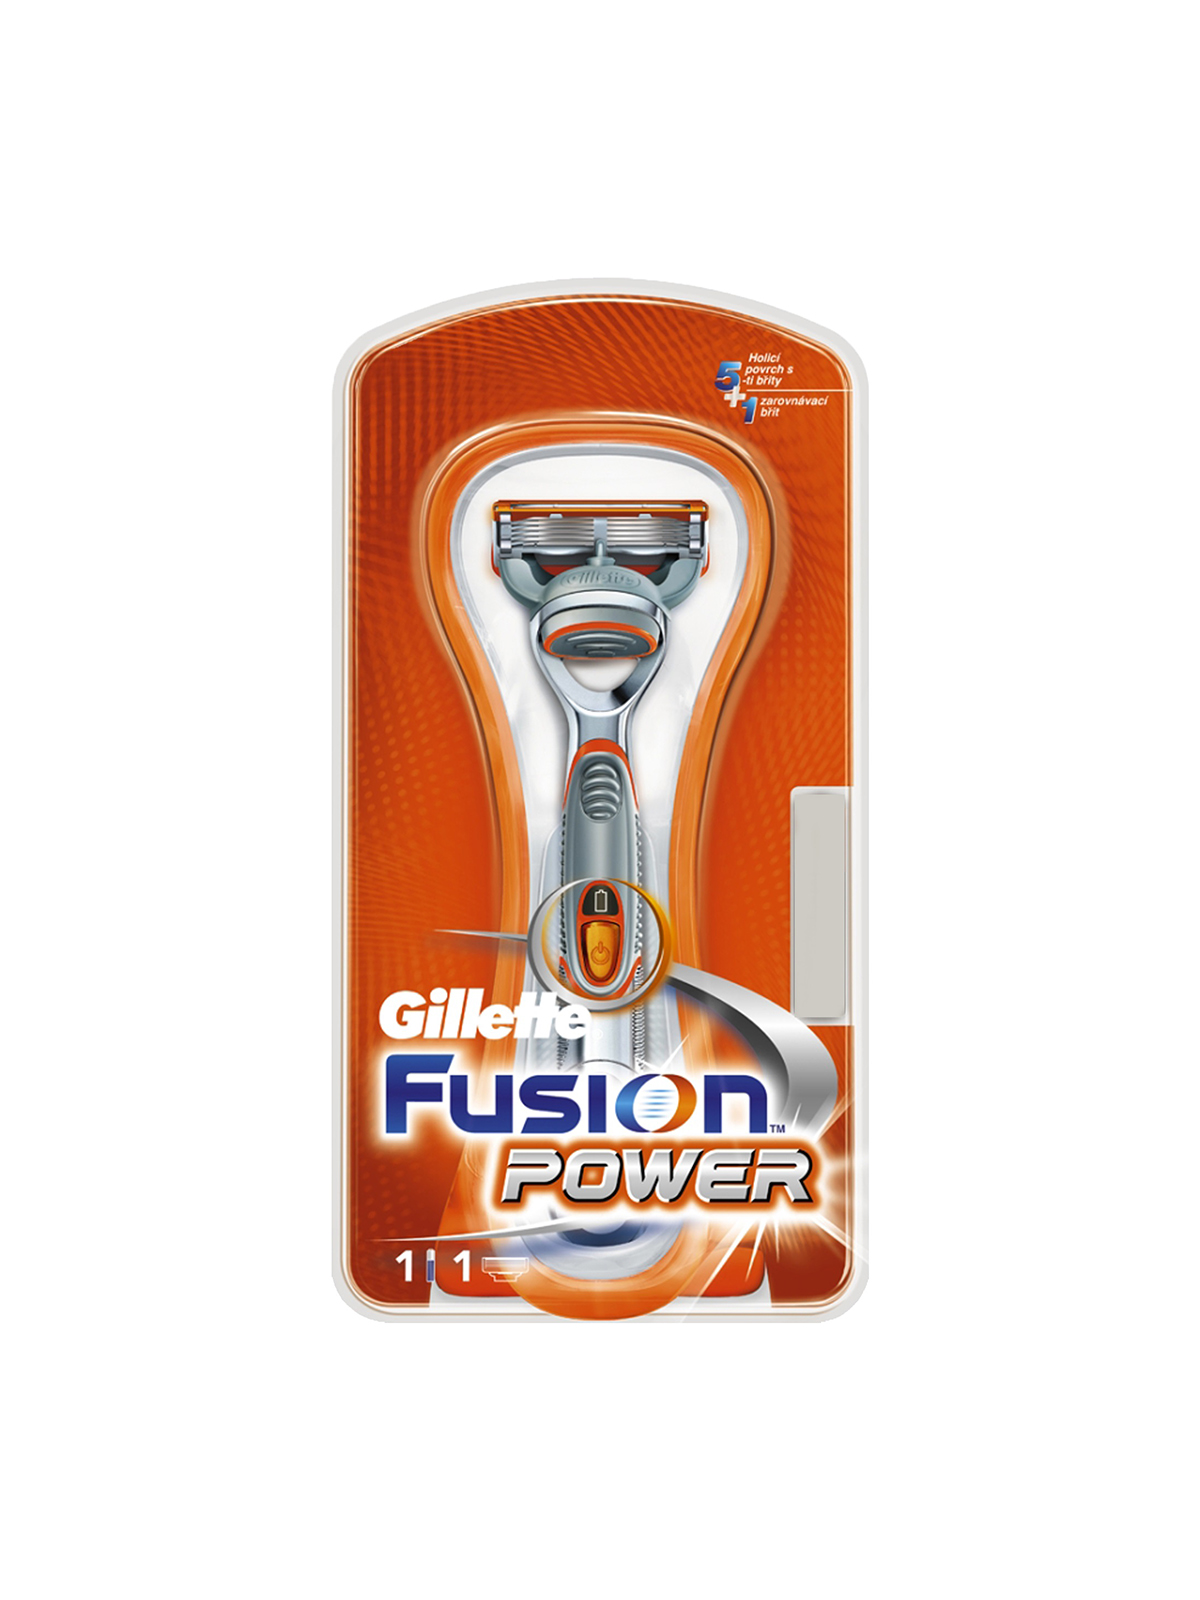 Станок для бритья gillette fusion power с 1 сменной кассетой